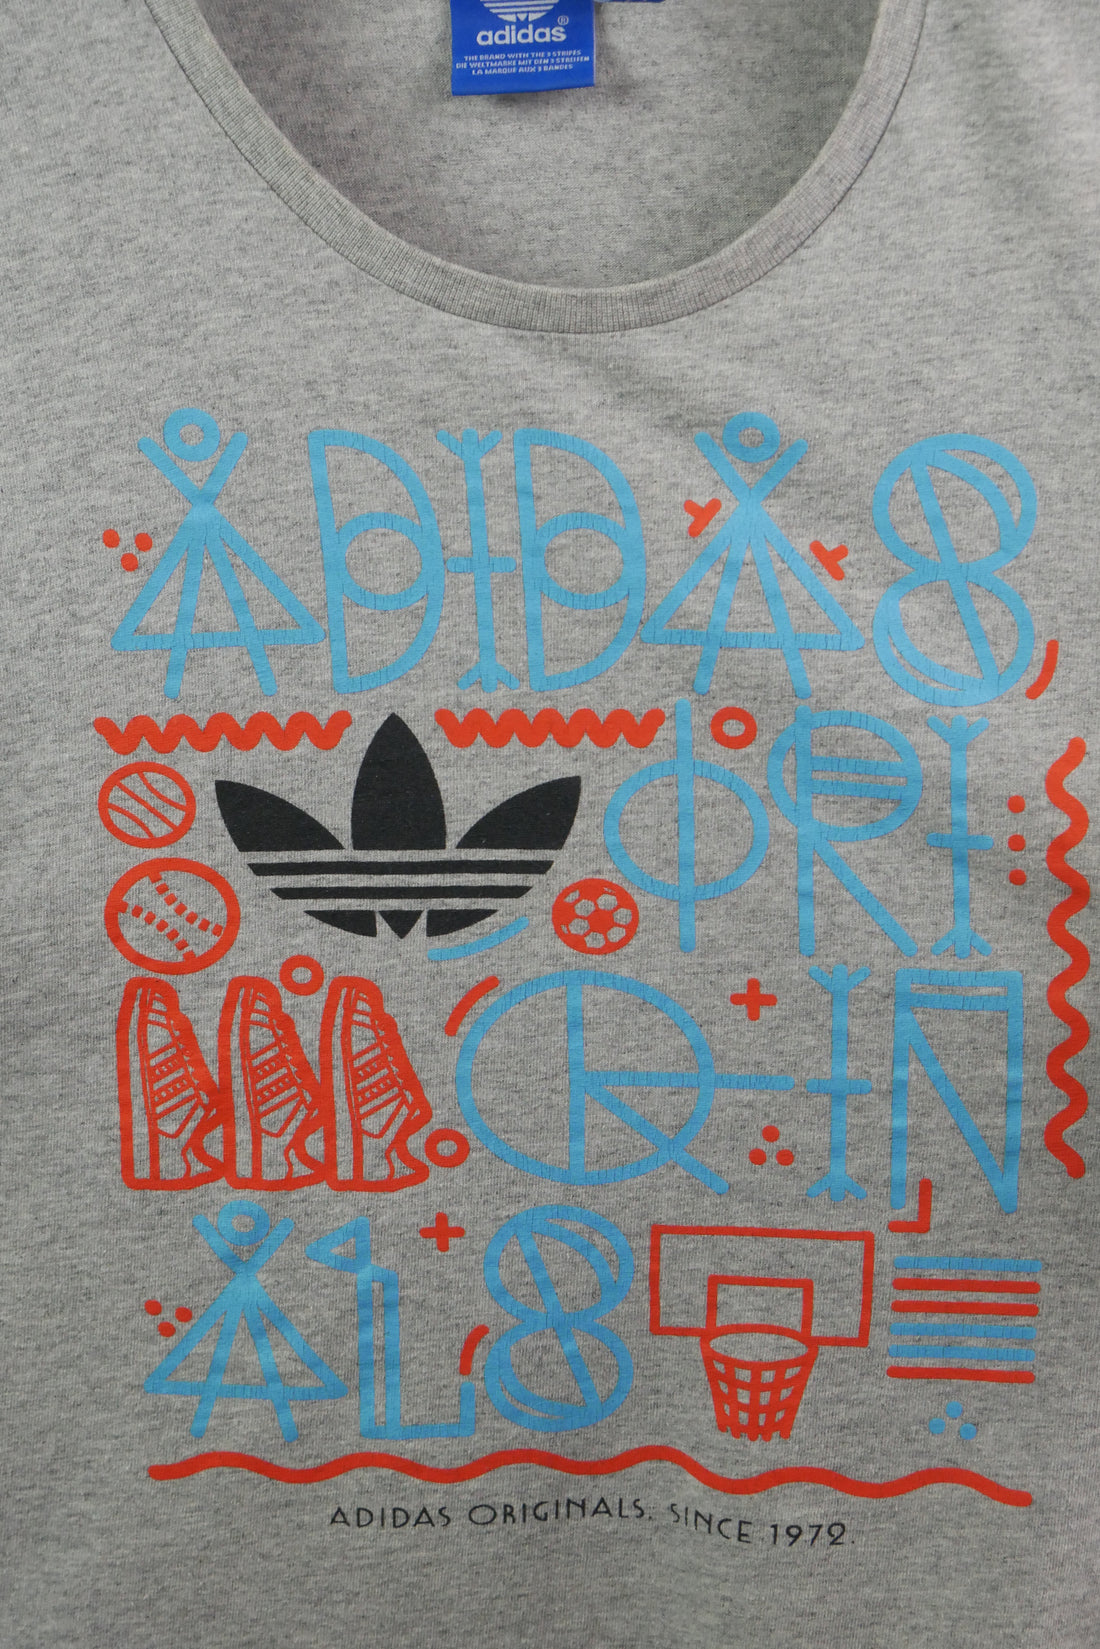 The Adidas Originals T-shirt (S)